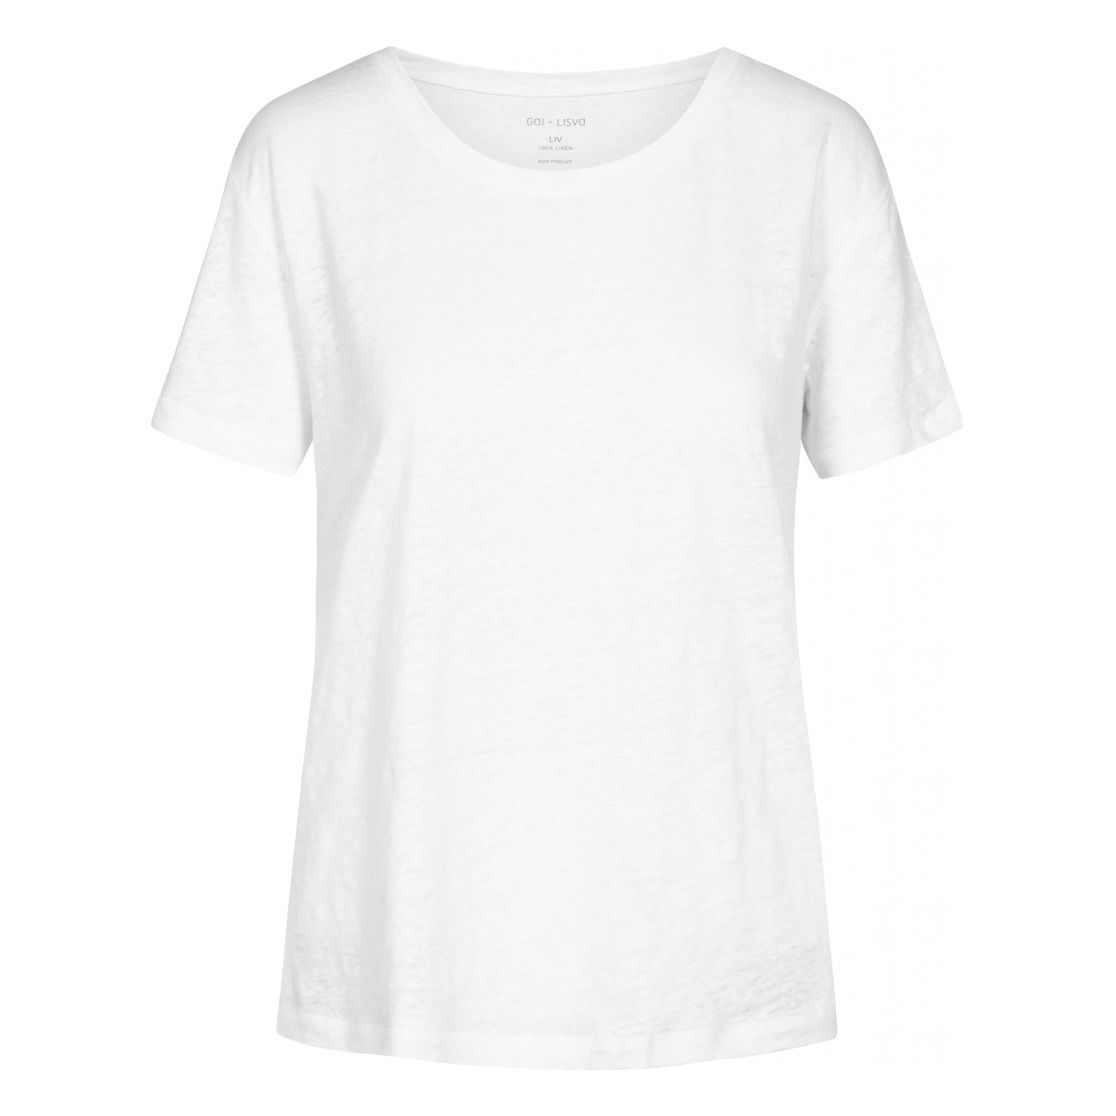 GAI+LISVA - T-Shirt Liv - Femme - Blanc